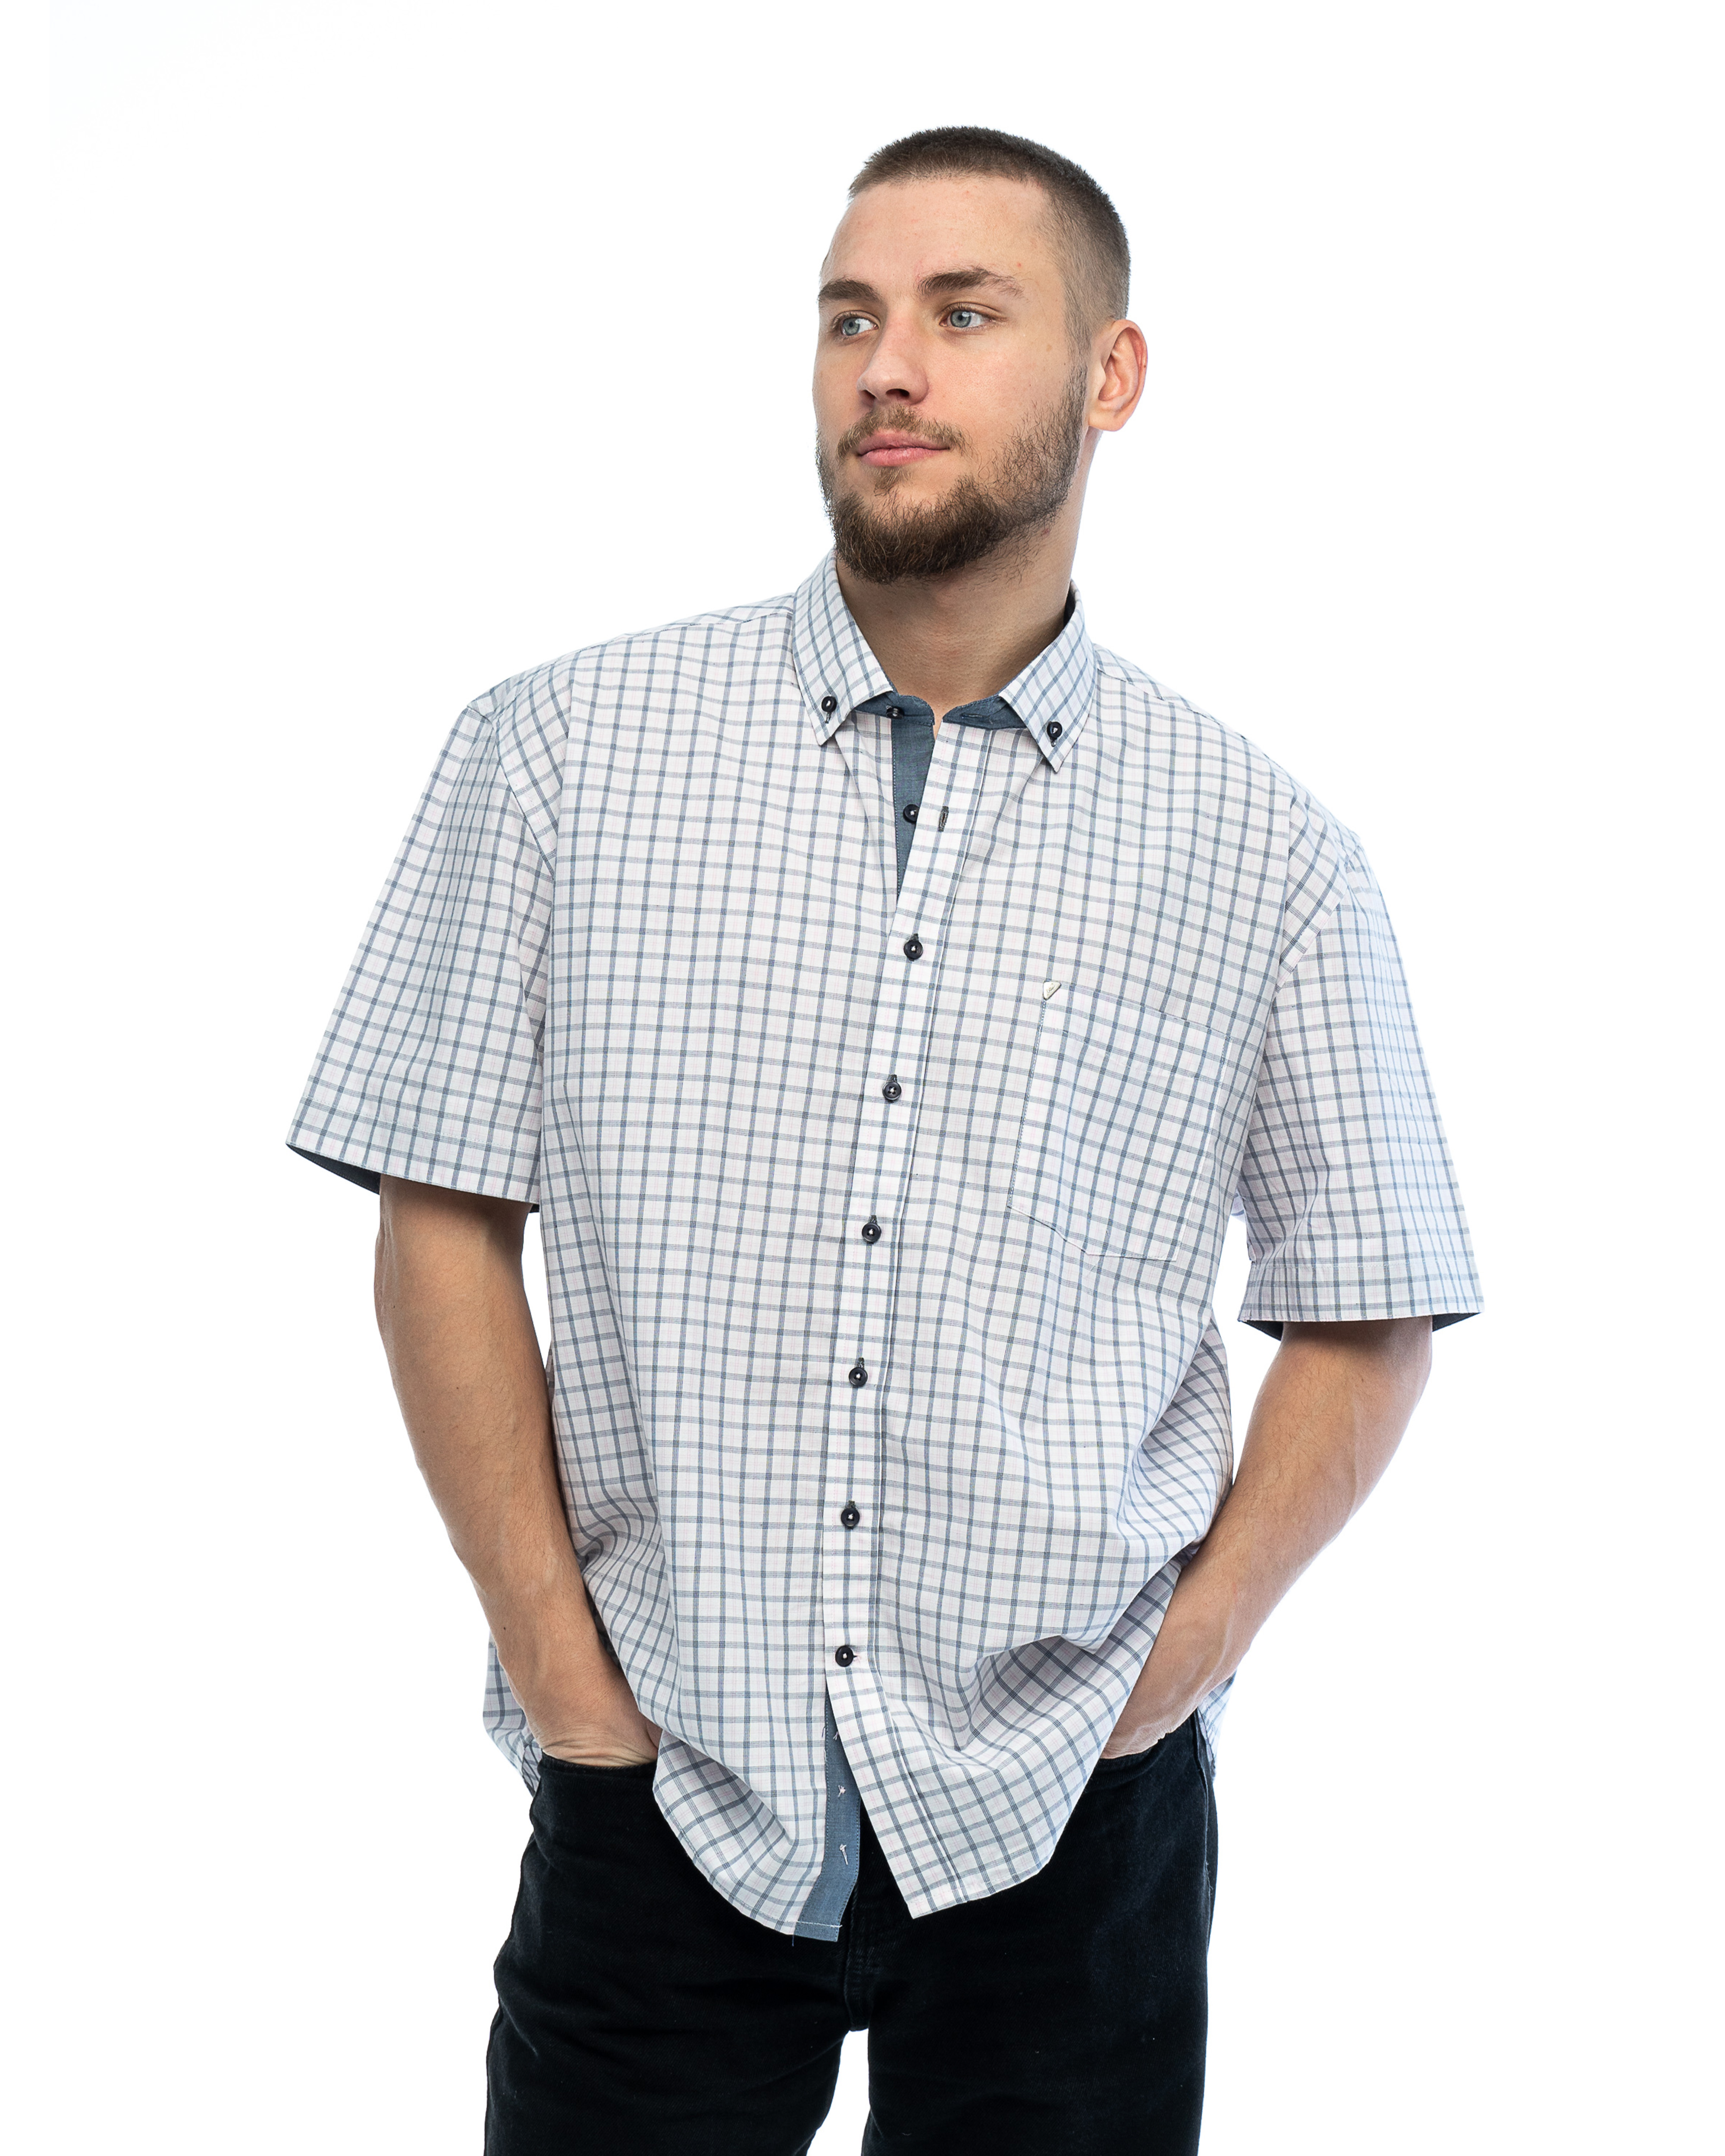 Рубашка мужская Maestro Cuba 6-K белая XL